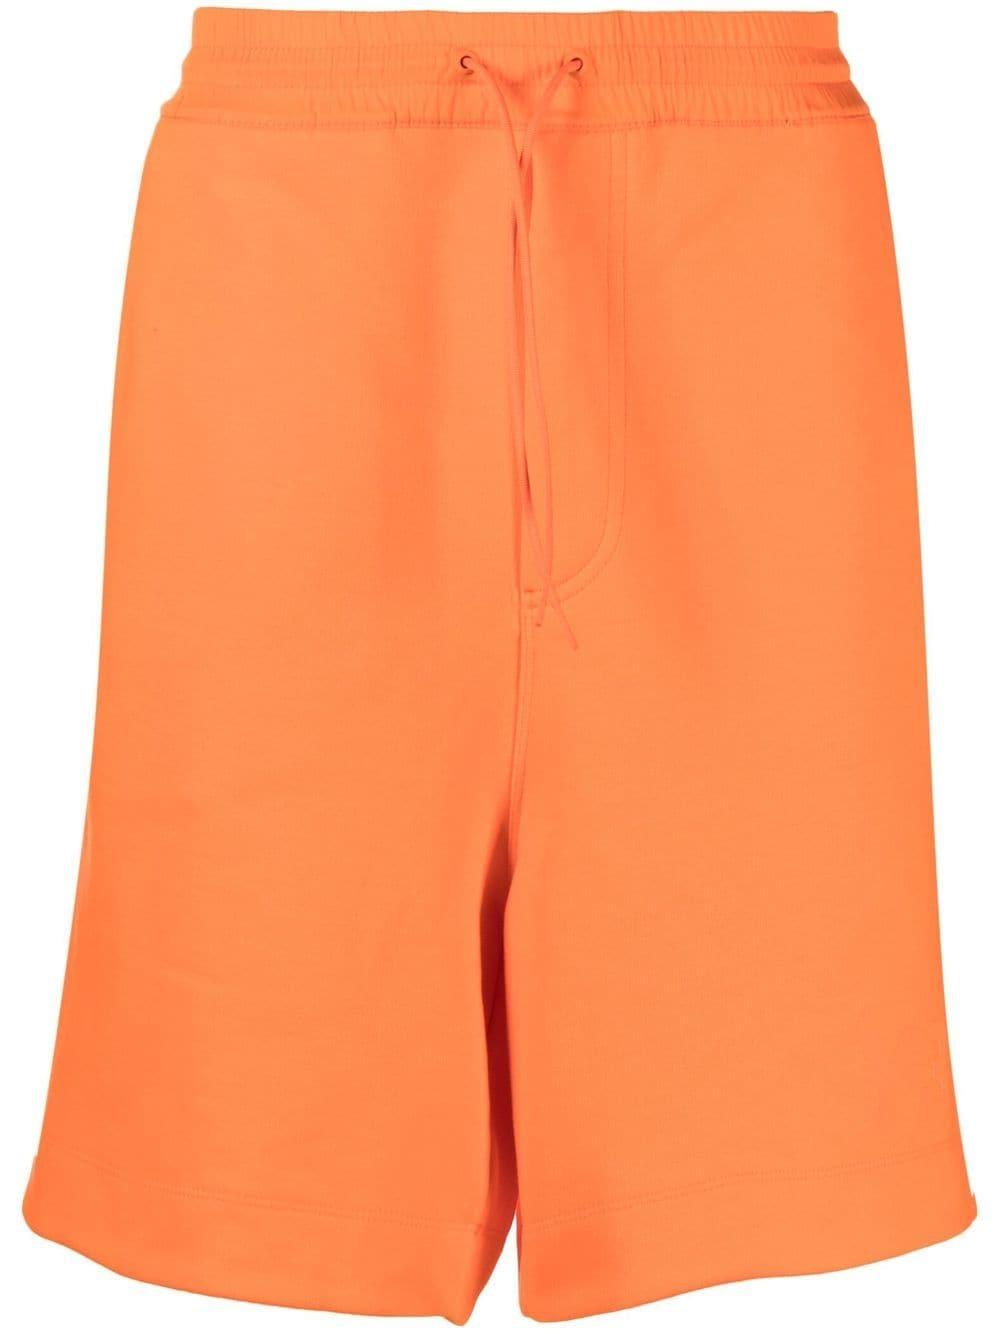 Uomo Shorts da Shorts Y-3 Bermuda con coulisseY-3 in Cotone da Uomo colore Arancione 